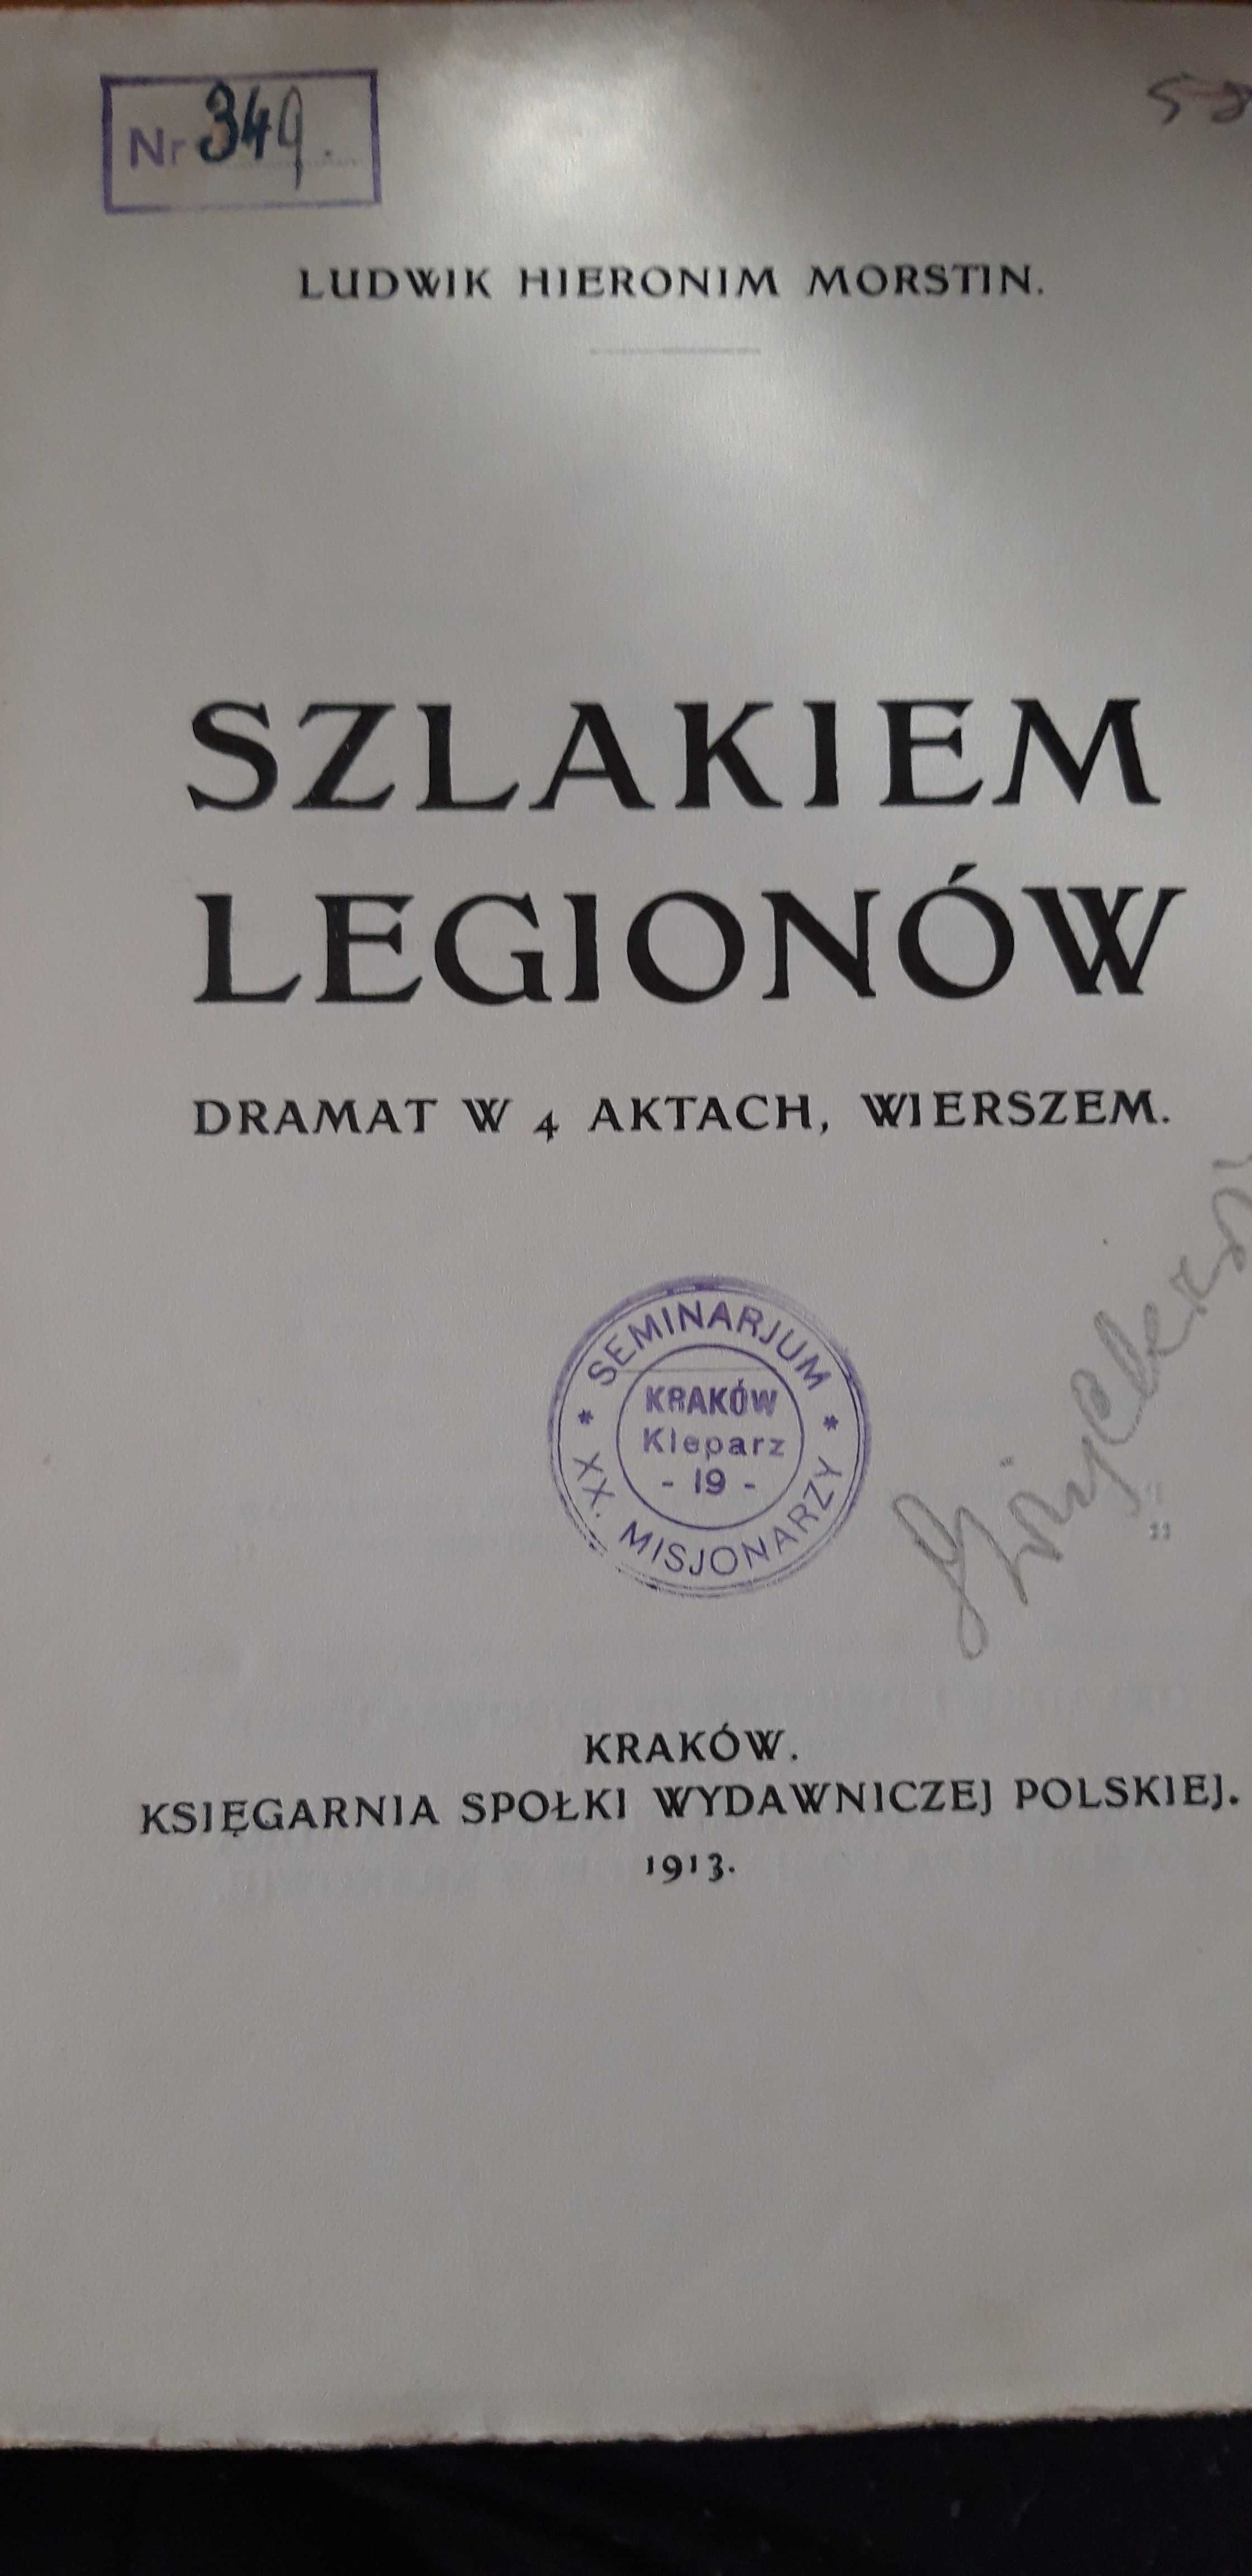 SZLAKIEM  LEGIONÓW -L.H. MORSTIN- Kraków 1913 opr. wyd. sygnowana.